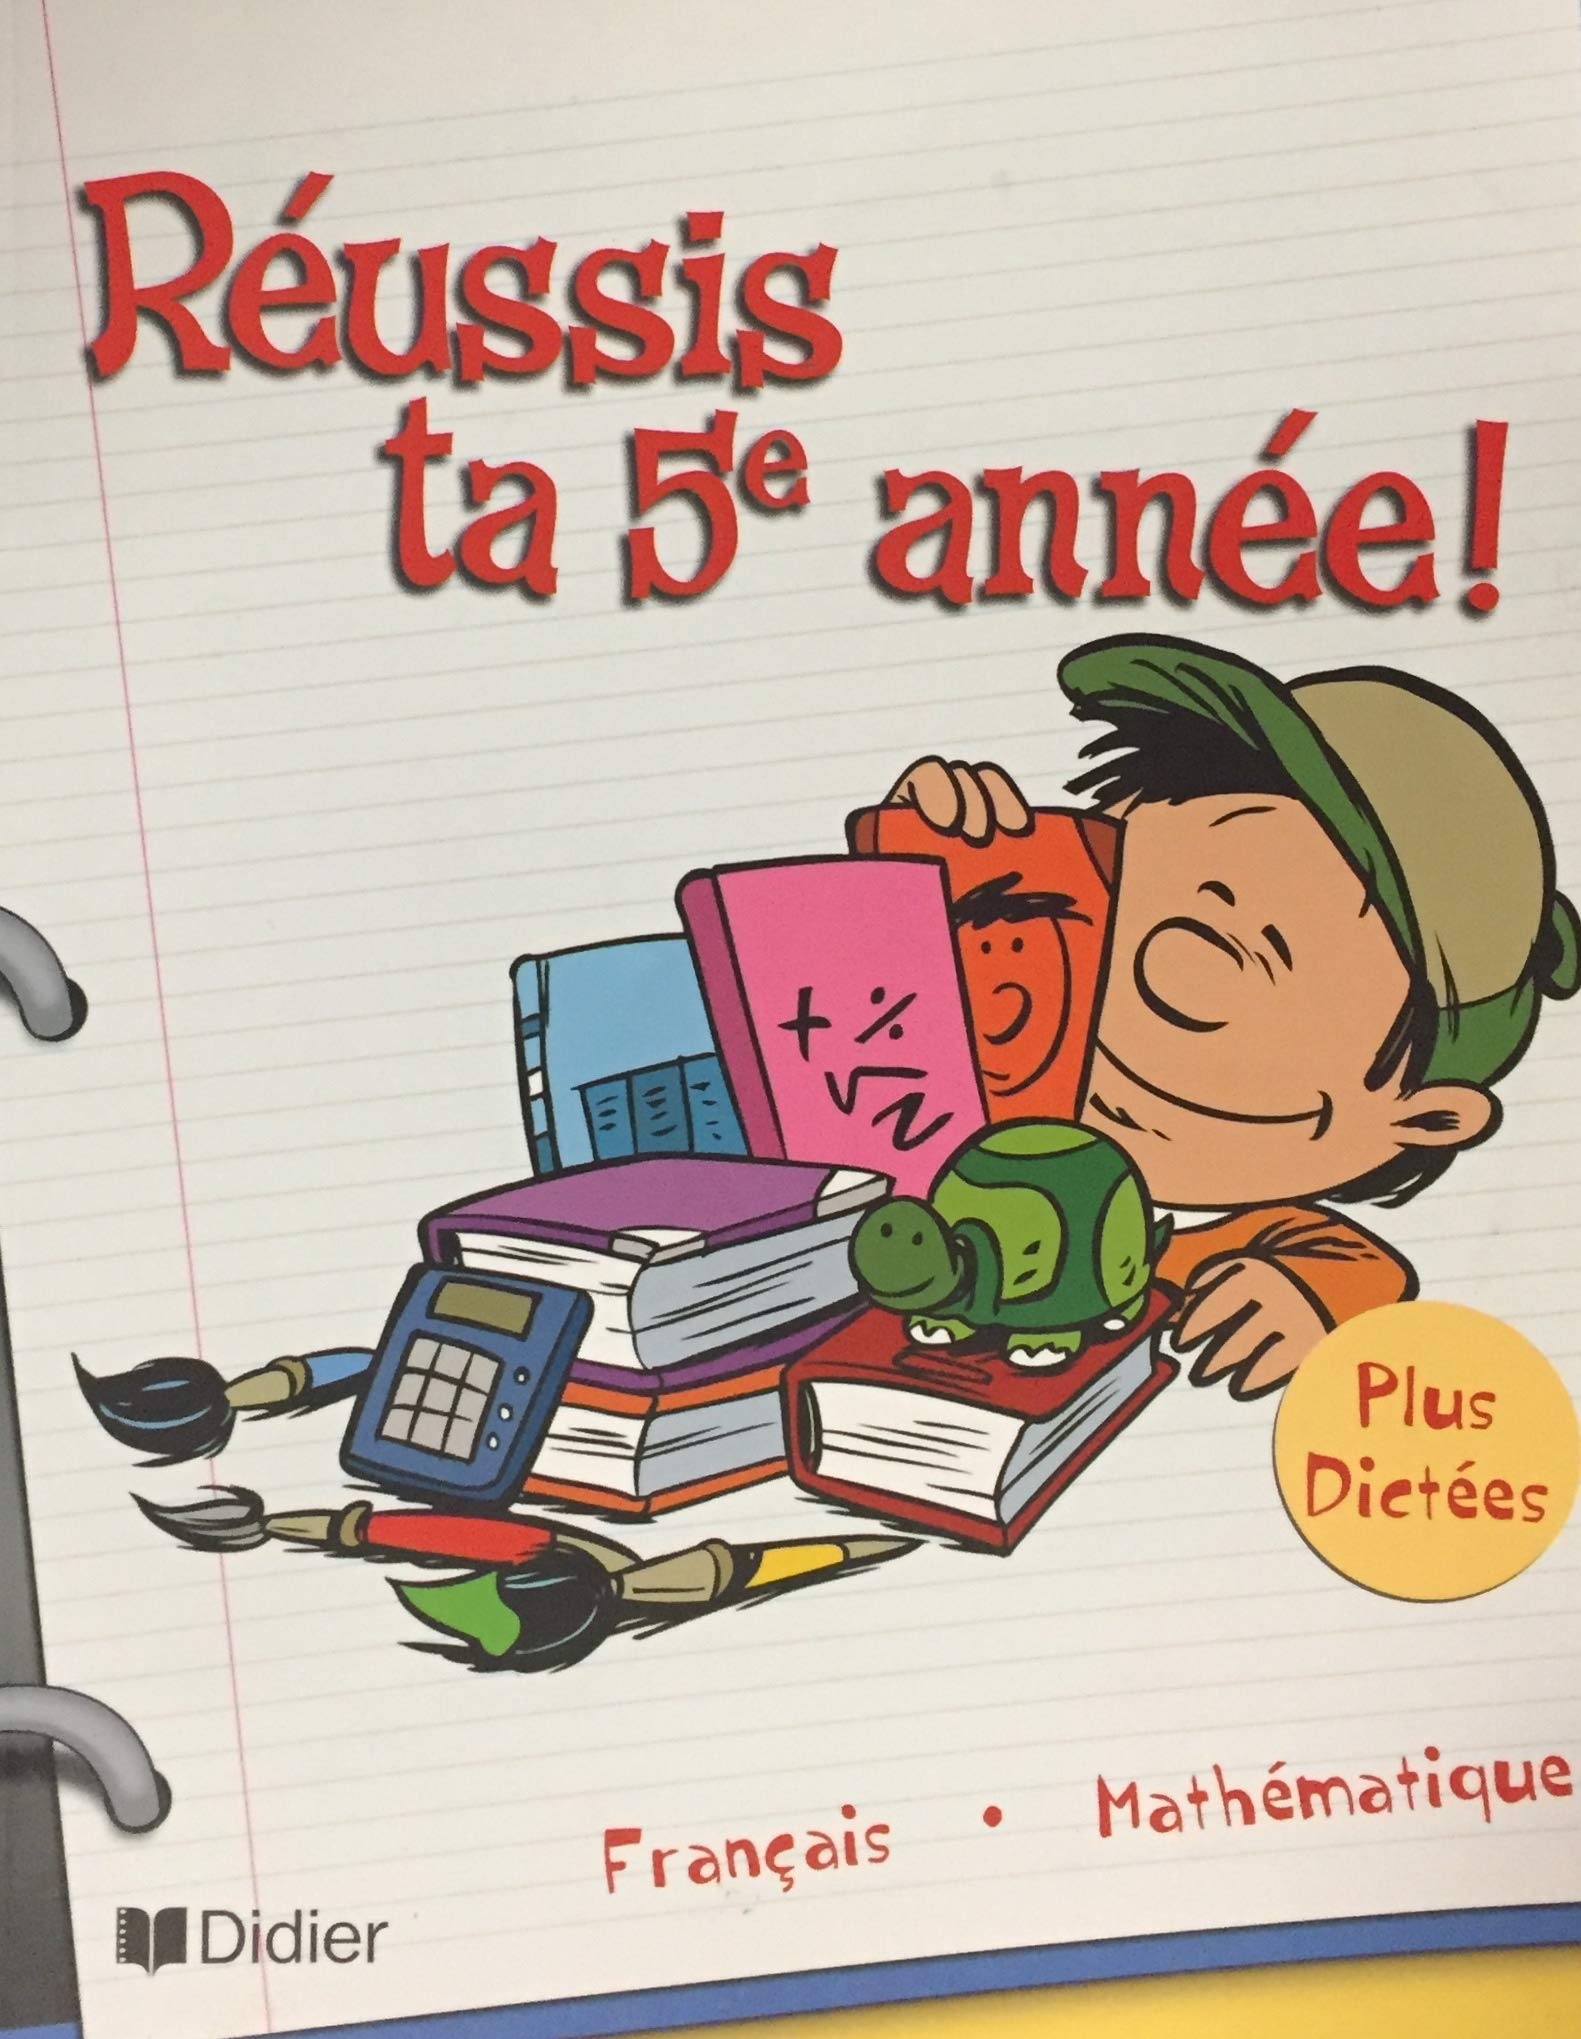 Livre ISBN 2891444205 Réussis ta 5e année! Français – Mathématiques – Dictées